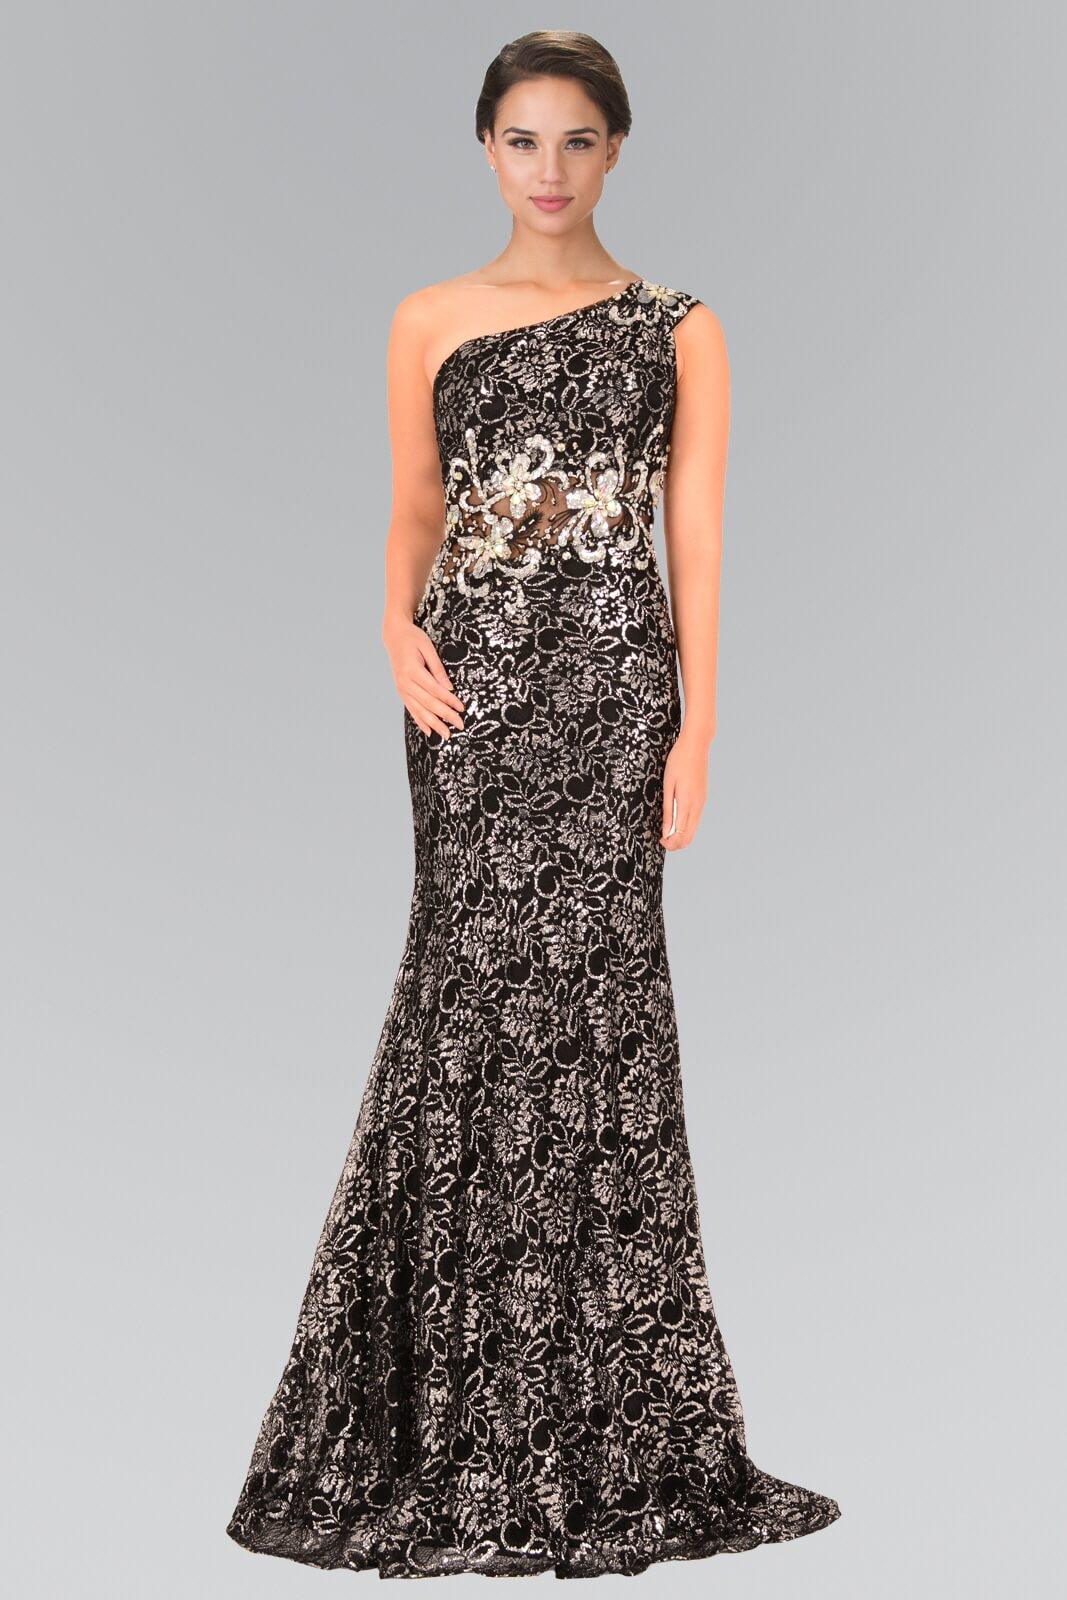 One Shoulder Long Prom Dress Formal - The Dress Outlet Elizabeth K